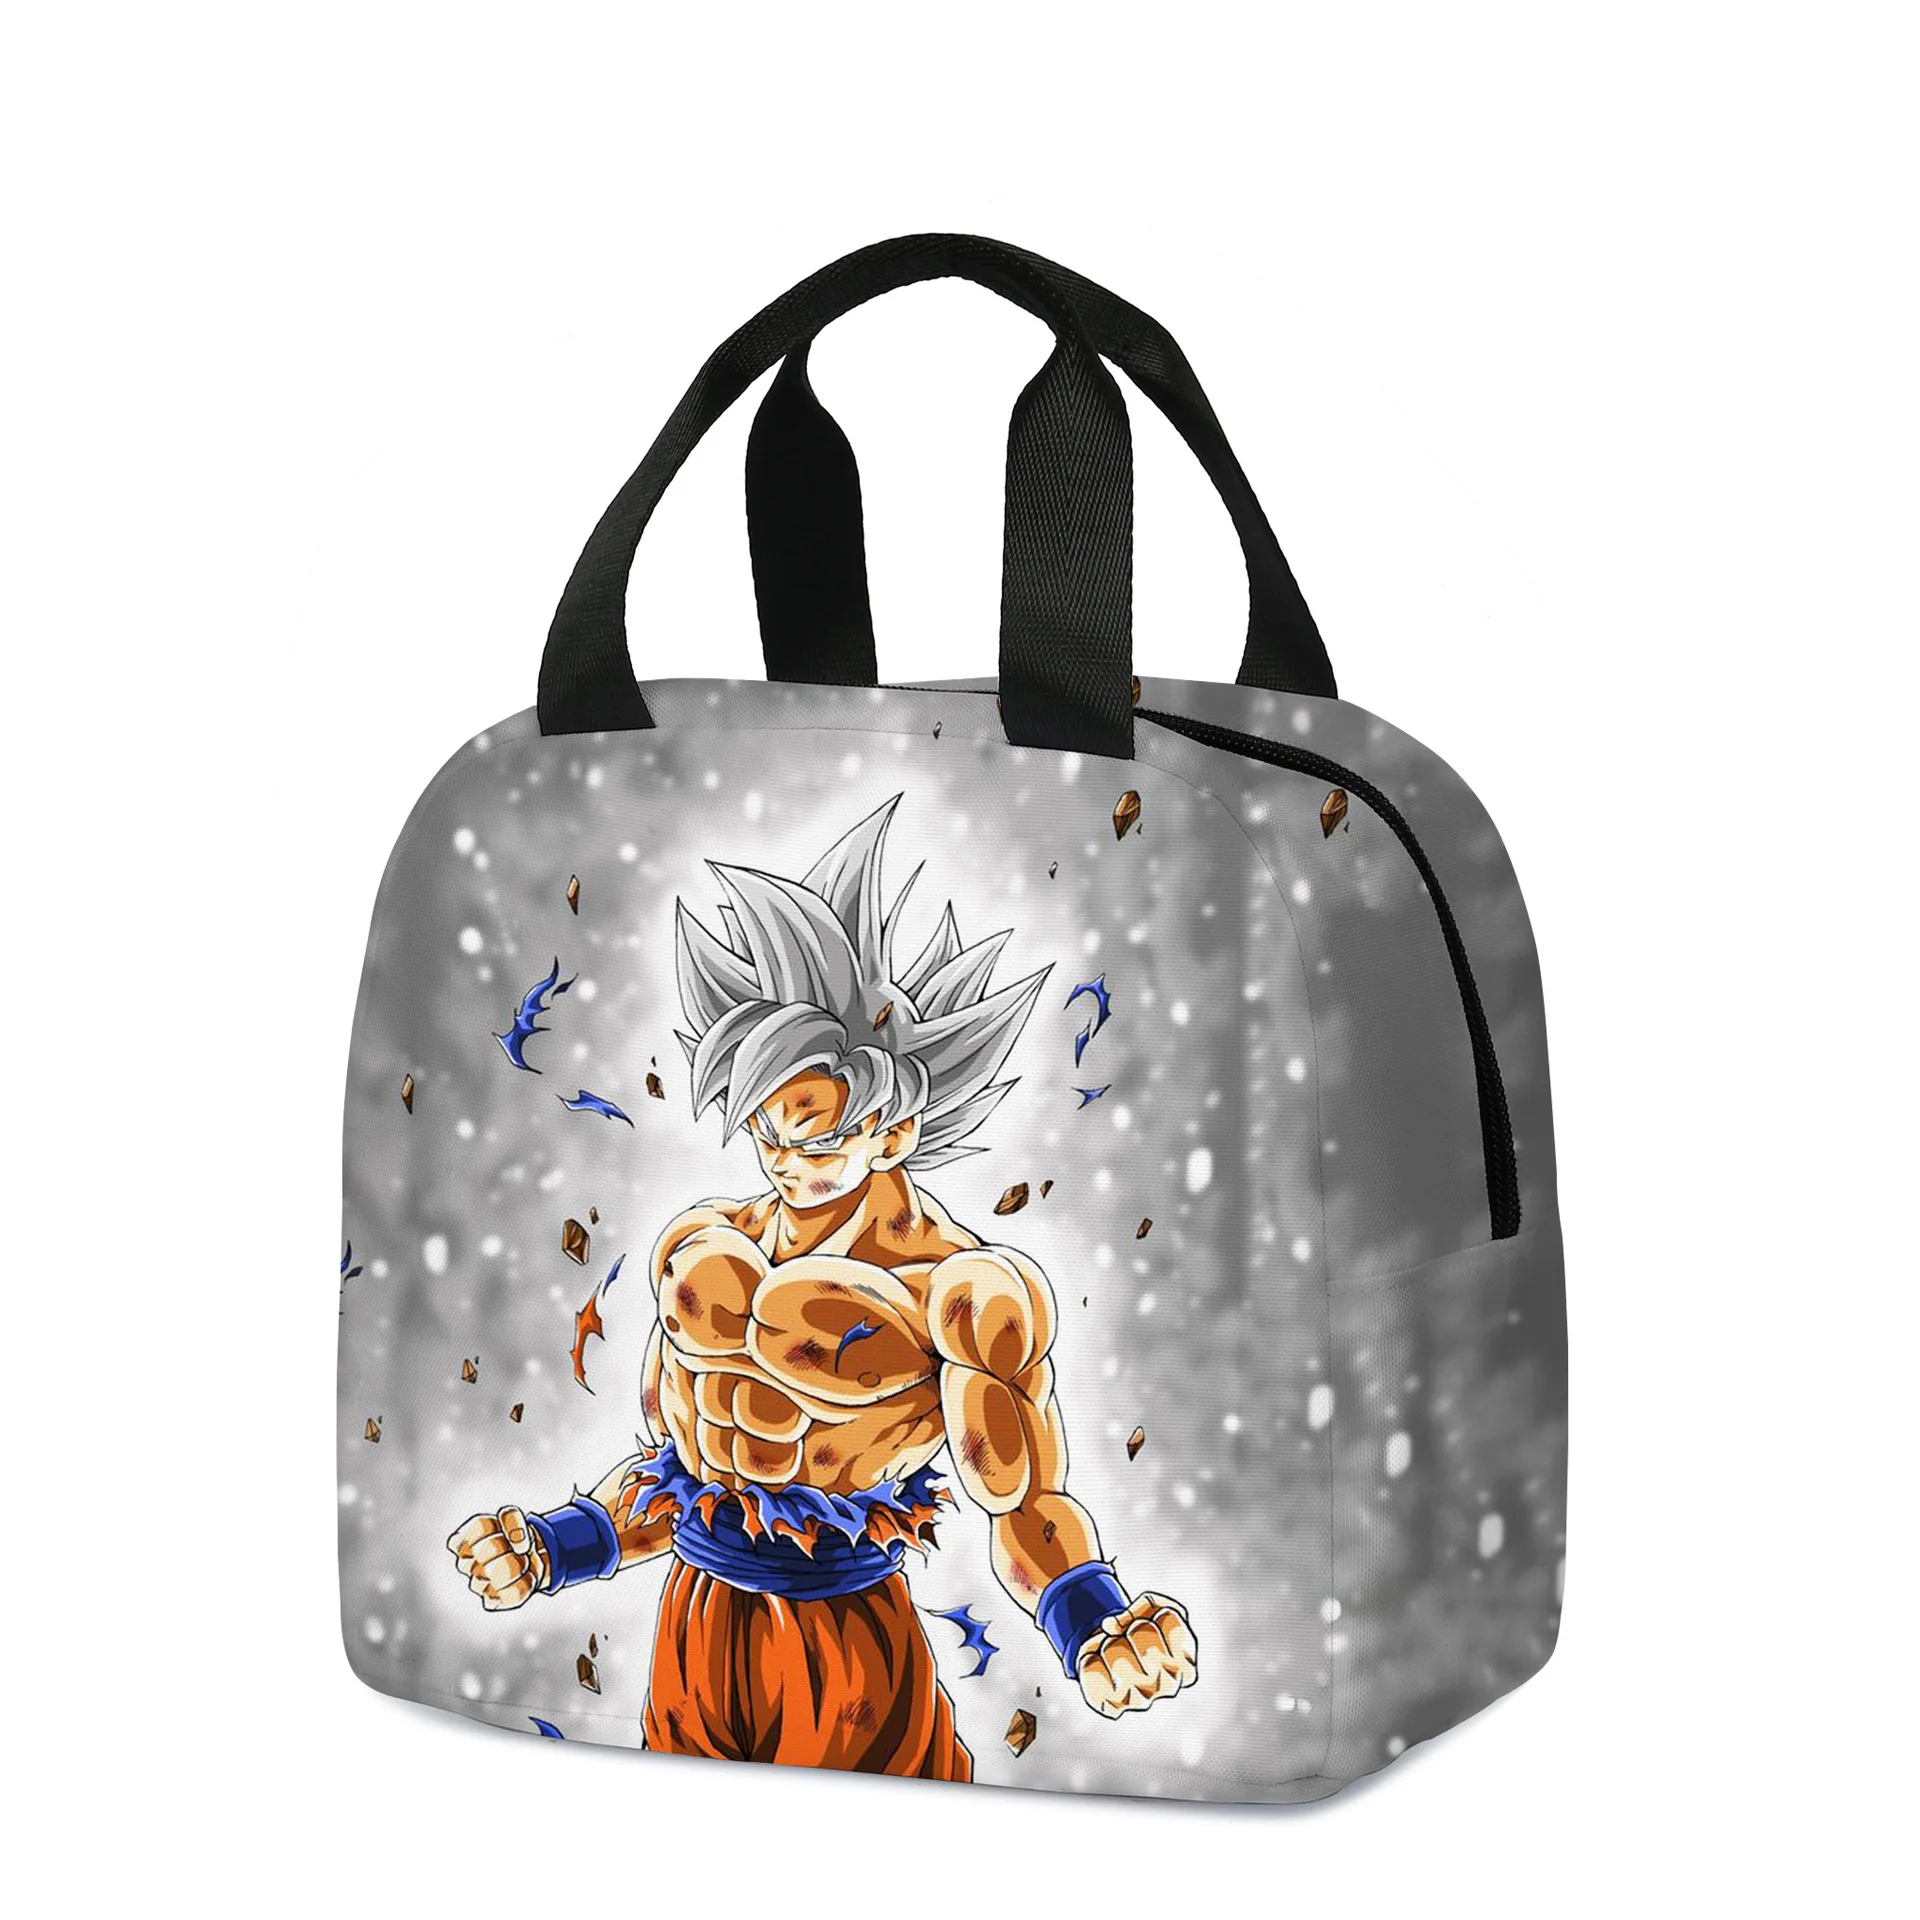 

Bandai 3D Dragon Ball Meal Bag Cartoon Portable Ice Bag Kids Lunch Bag Birthday Gift for Girls Kids Boys